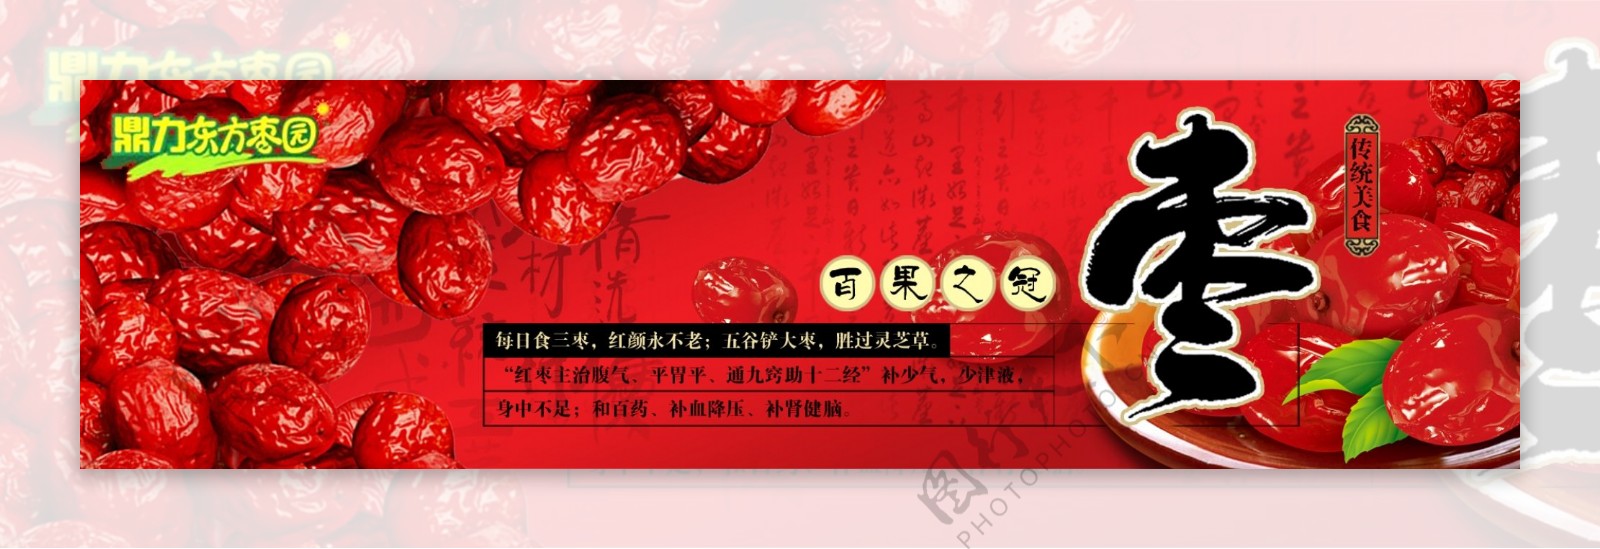 大红枣海报图片